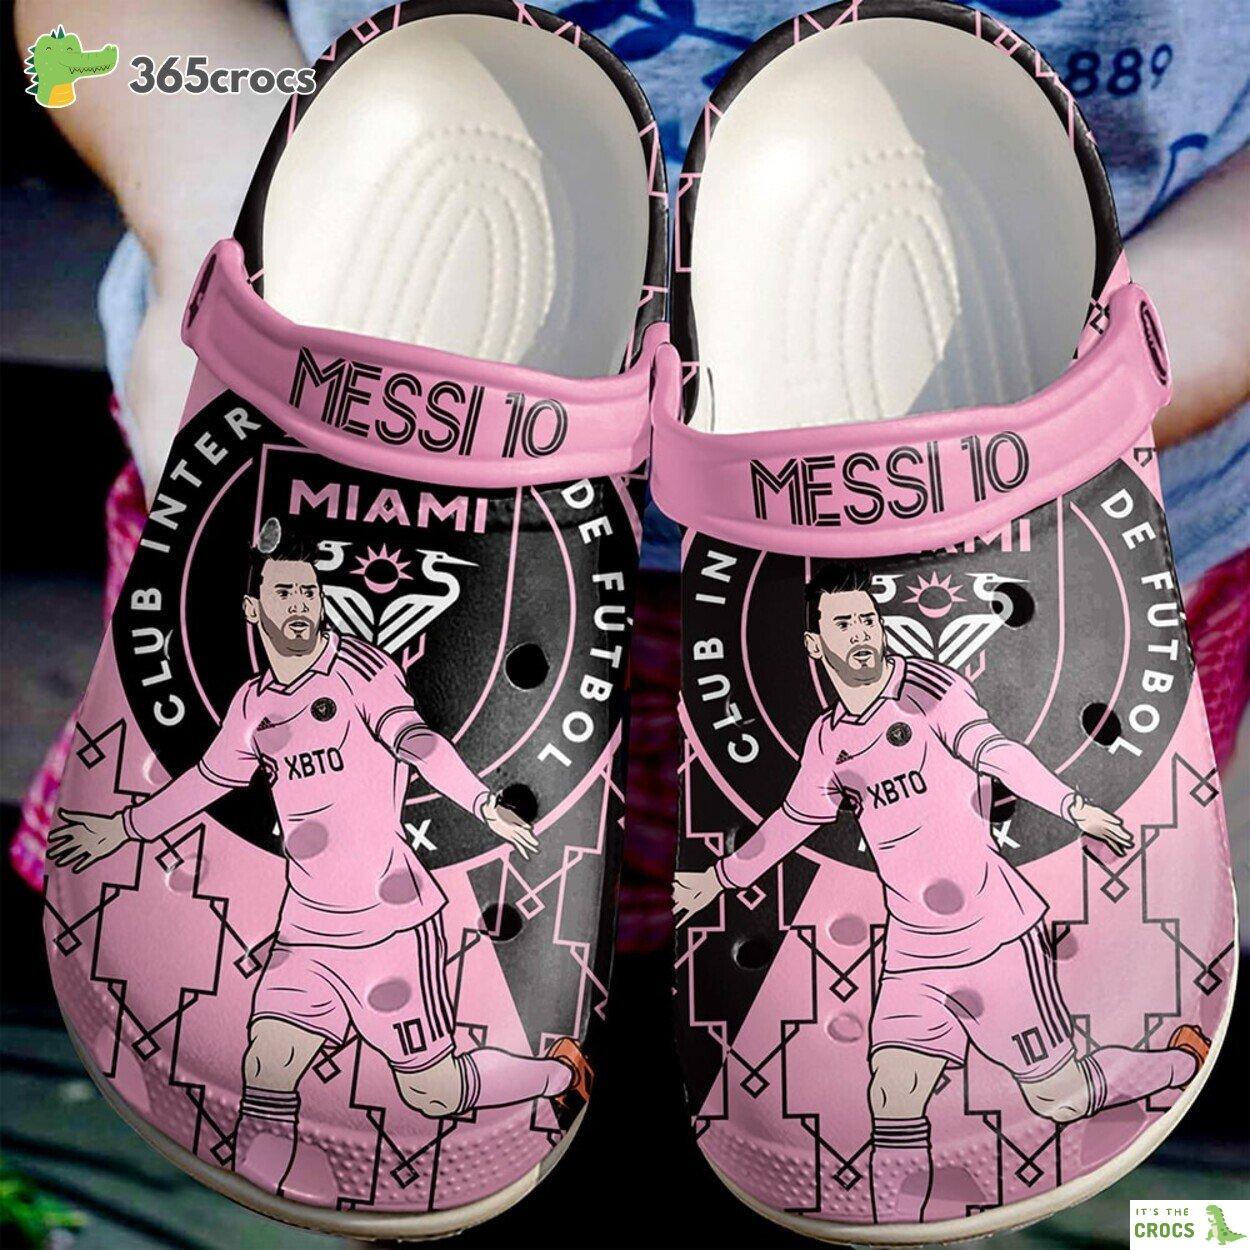 Lionel Messi Soccer Edition Four Premium Comfortable Crocs Clogs Shoes Elite